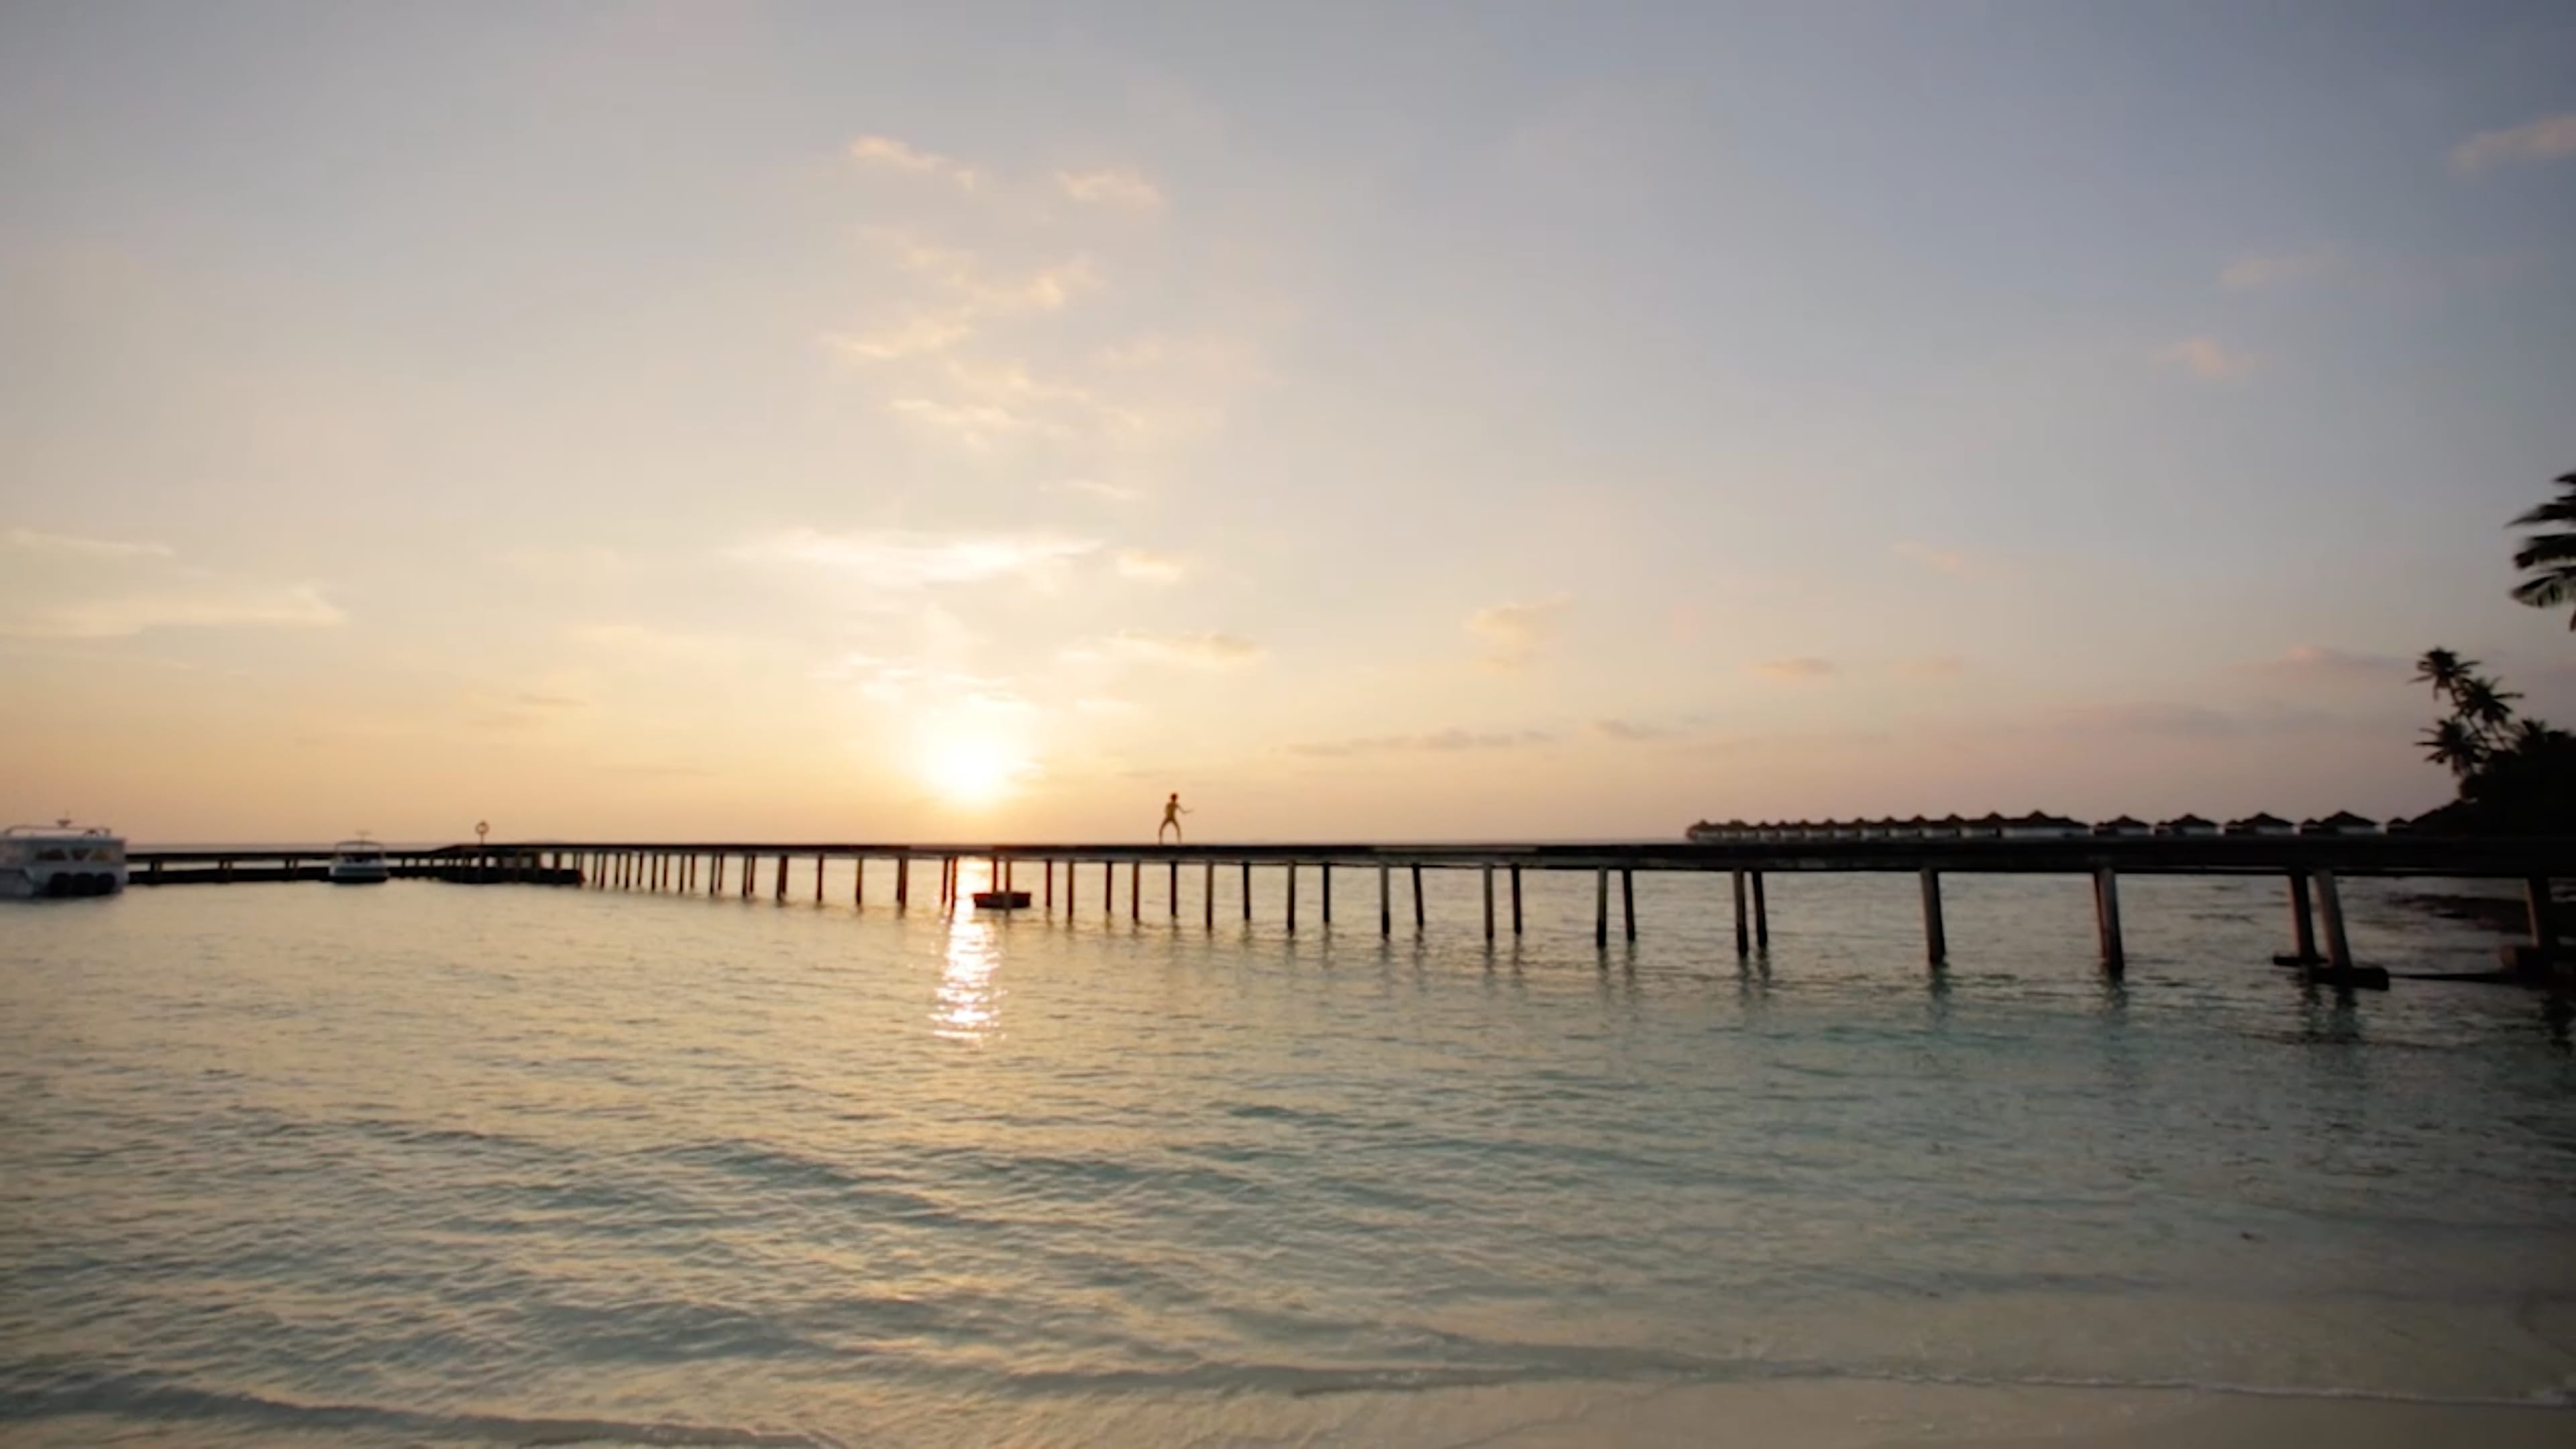 Ein langer Steg auf dem Wasser, darauf eine Person. Dahinter Sonnenuntergang. Am Strand scheinen Palmen zu sein. 